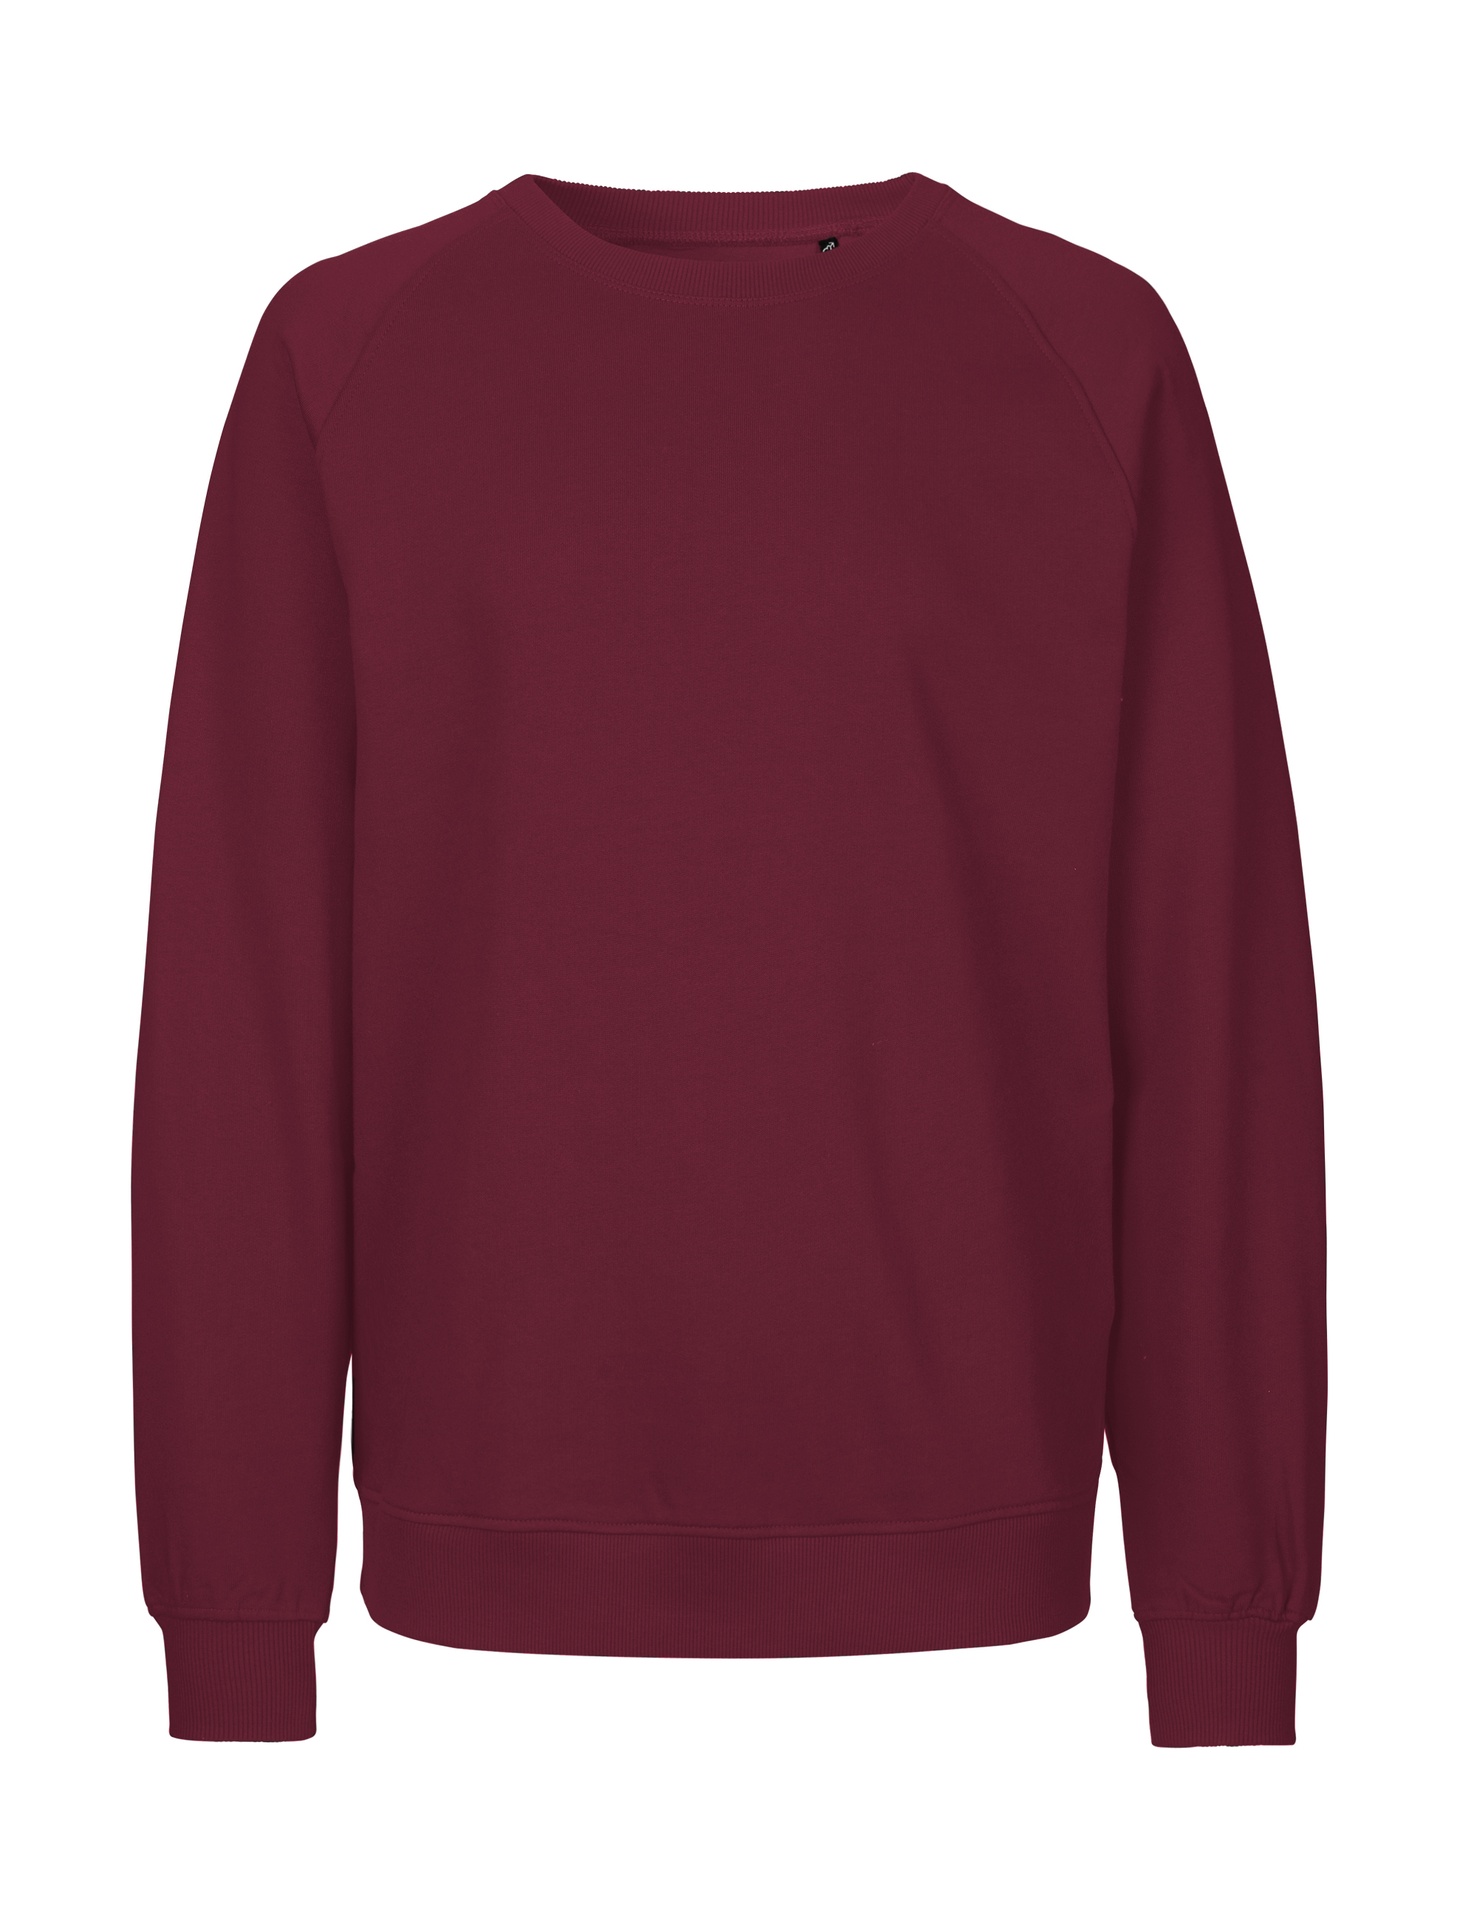 [PR/02763] Unisex Sweatshirt (Bordeaux 26, L)